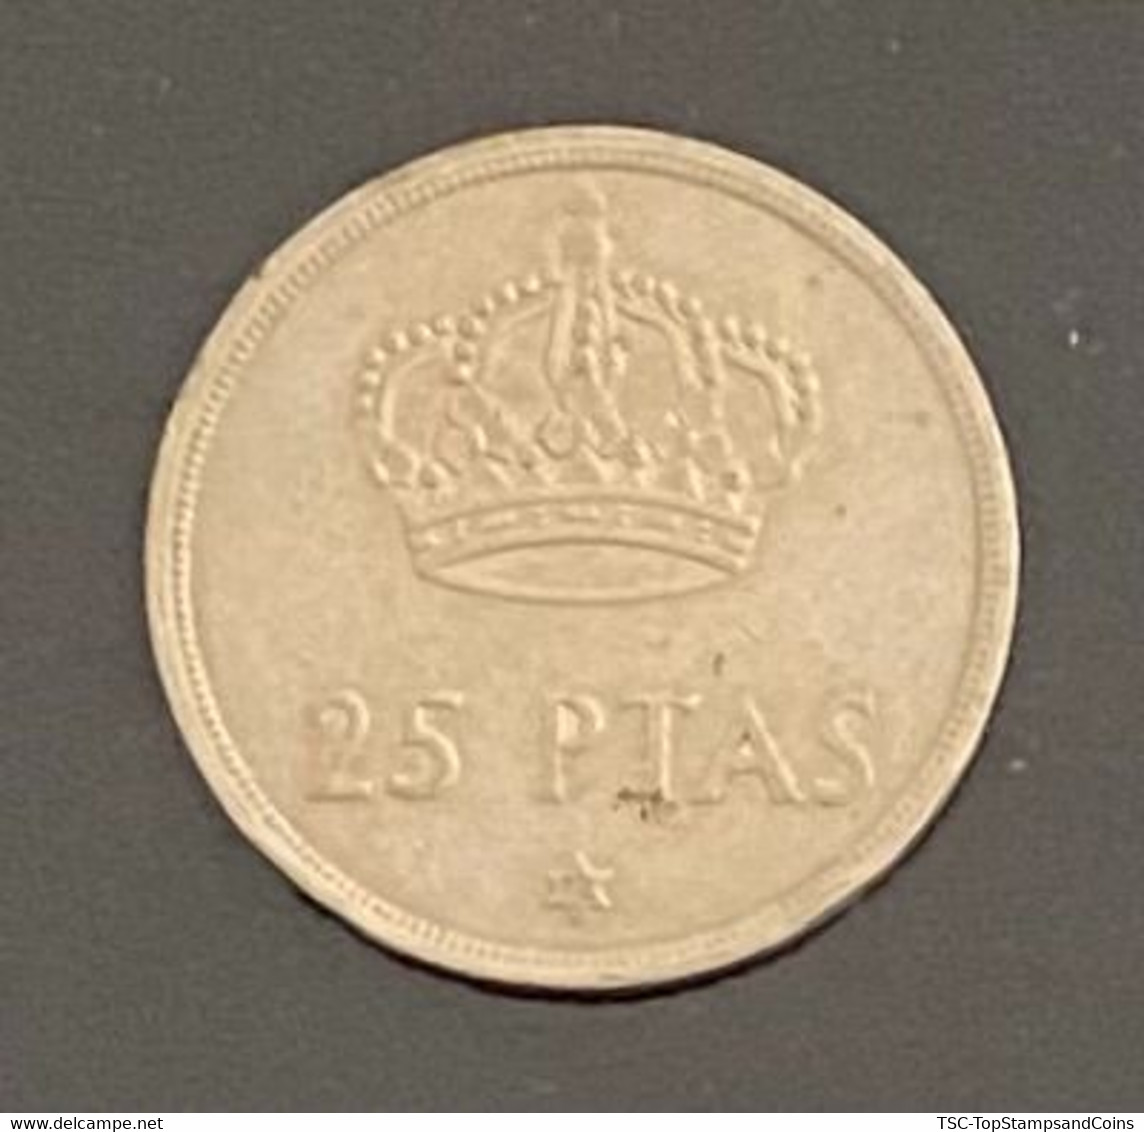 $$ESP1550 - King Juan Carlos I - 25 Pesetas Coin - Spain - 1975 - 25 Peseta